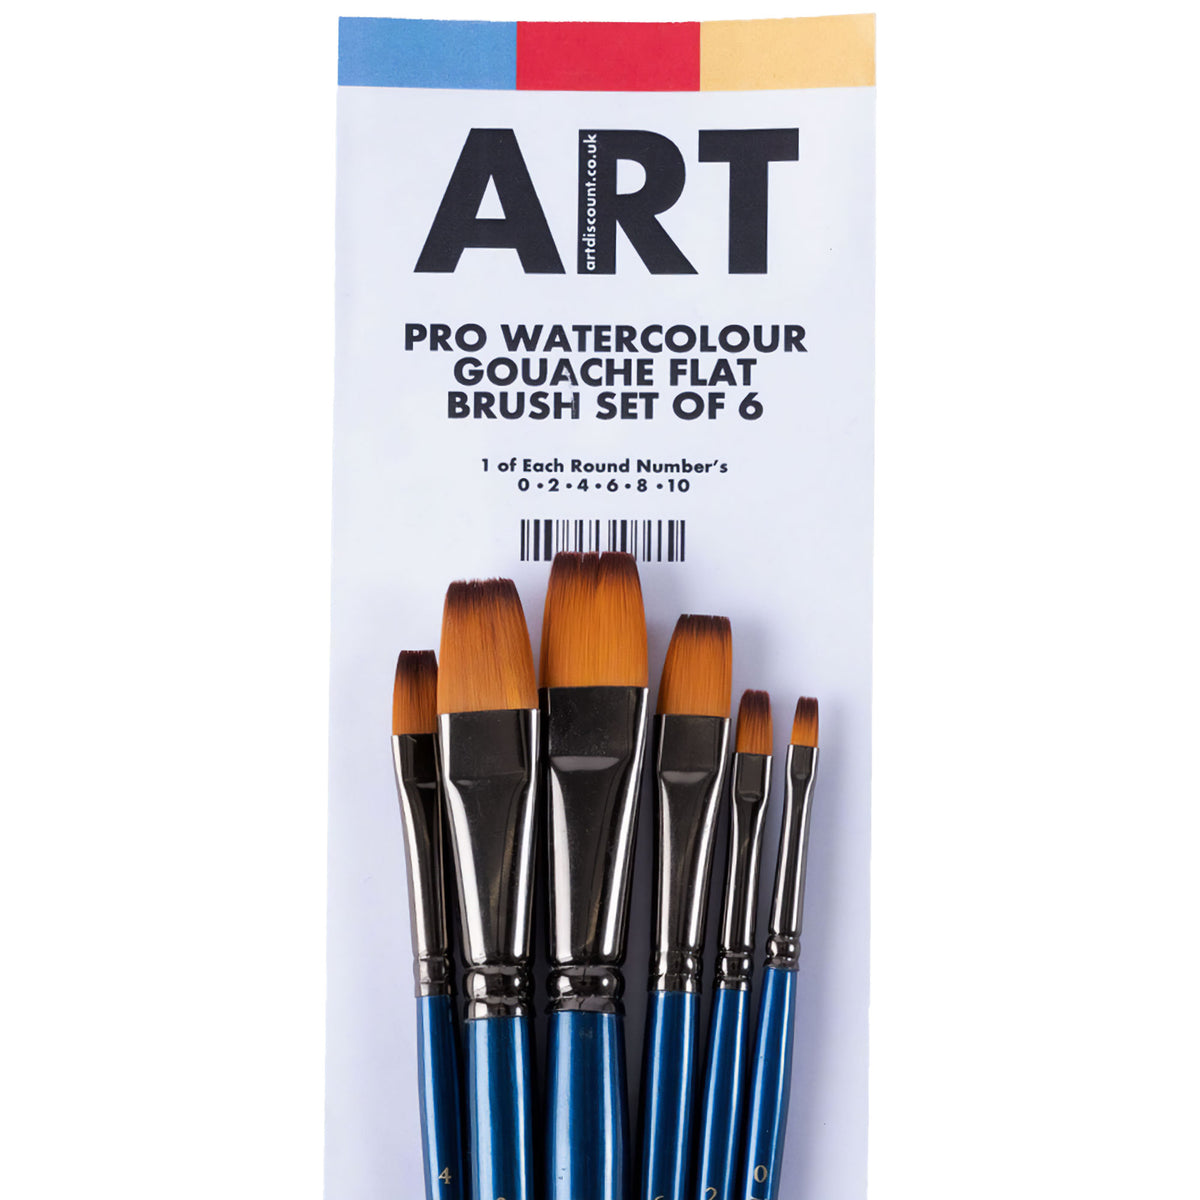 ARTdiscount Pro Watercolour/Gouache Flat Brush Set of 6